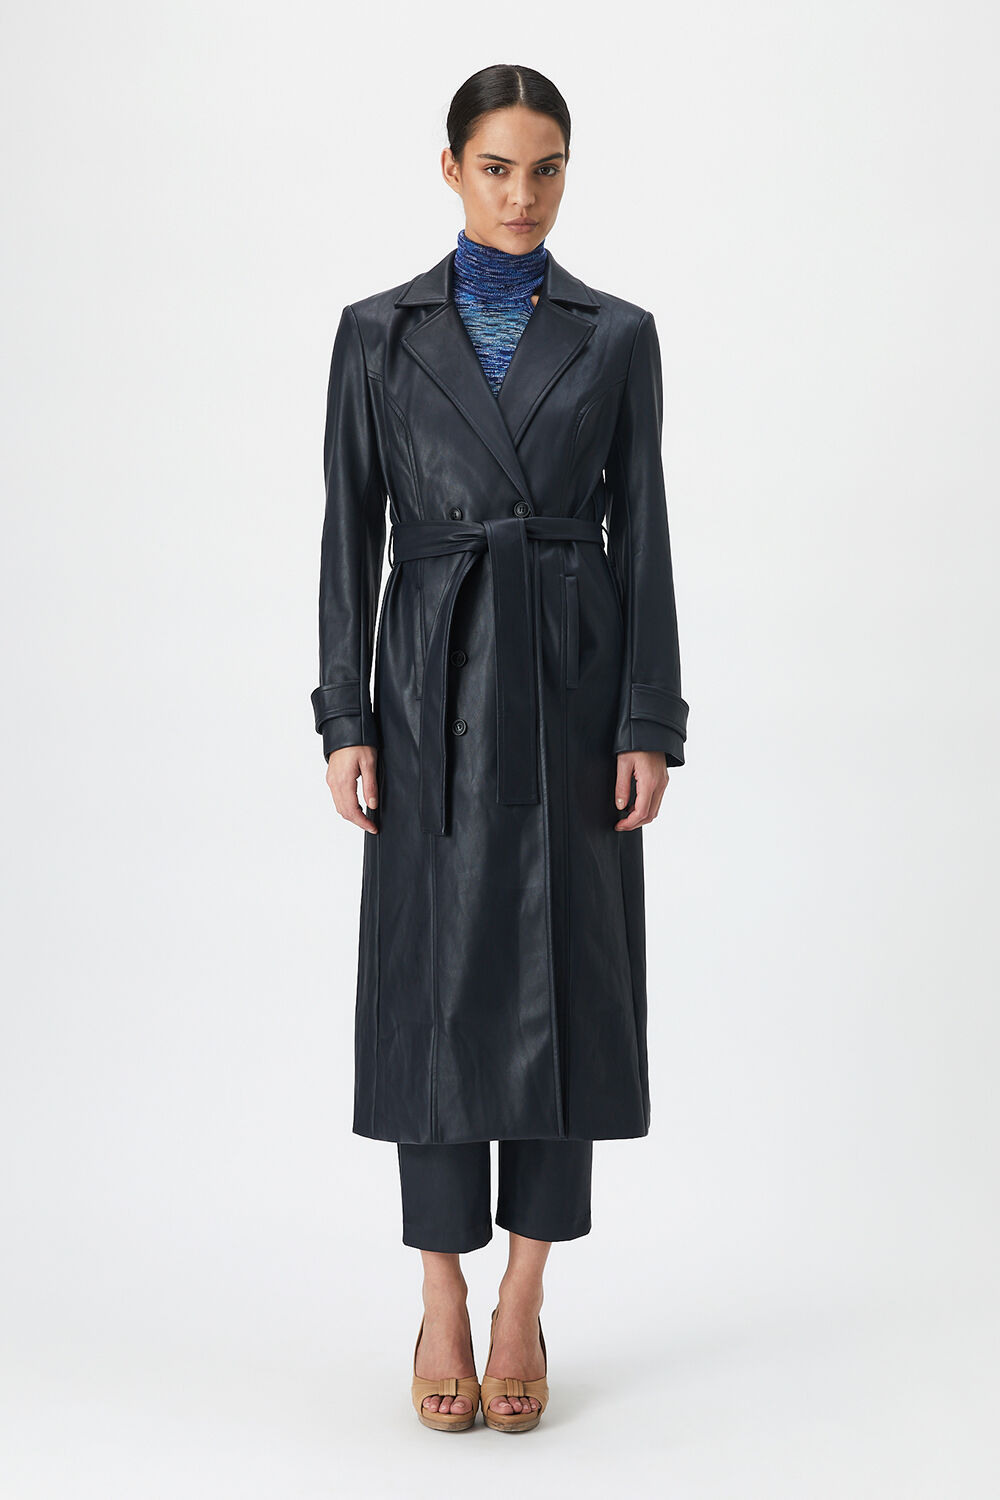 Bardot Vegan Leather Trench Coat in Black - Size M